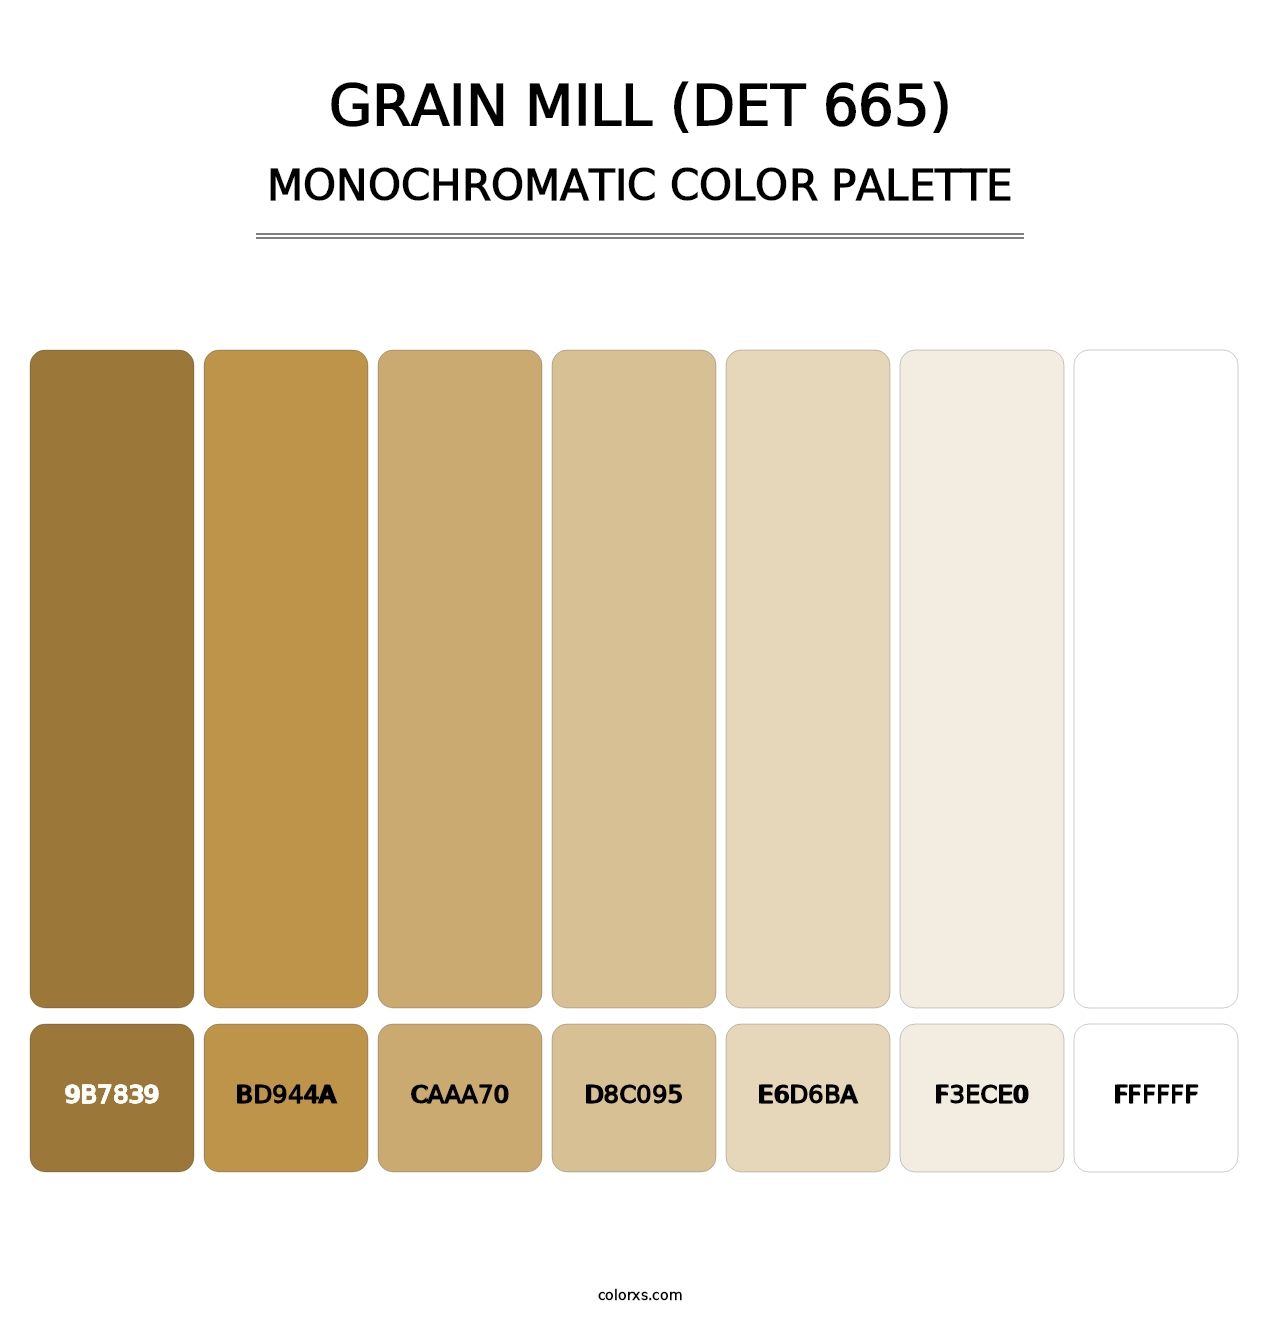 Grain Mill (DET 665) - Monochromatic Color Palette